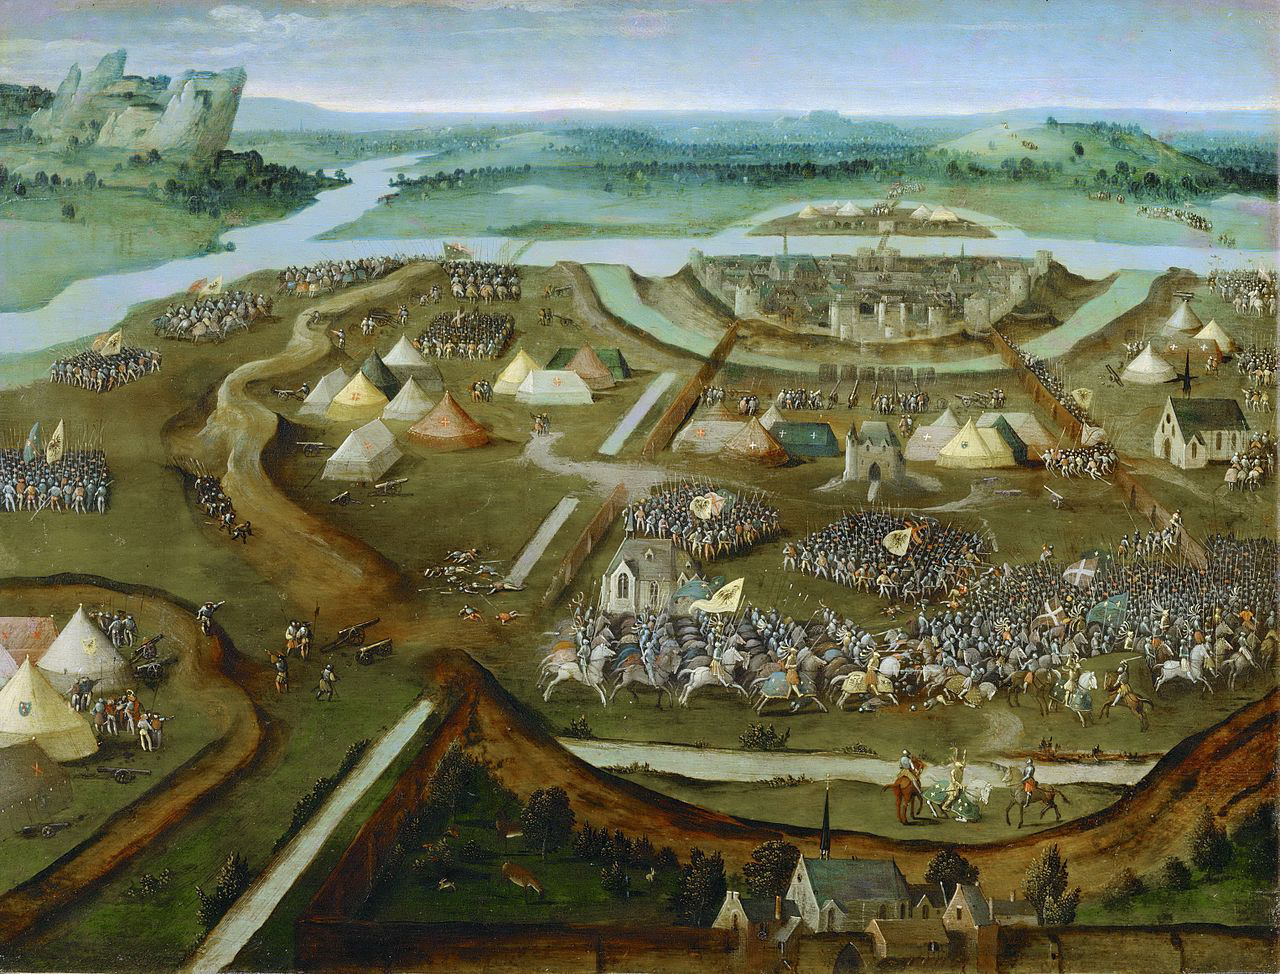 Gemälde mit der Schlacht von Pavia von Joachim Patinier um 1530